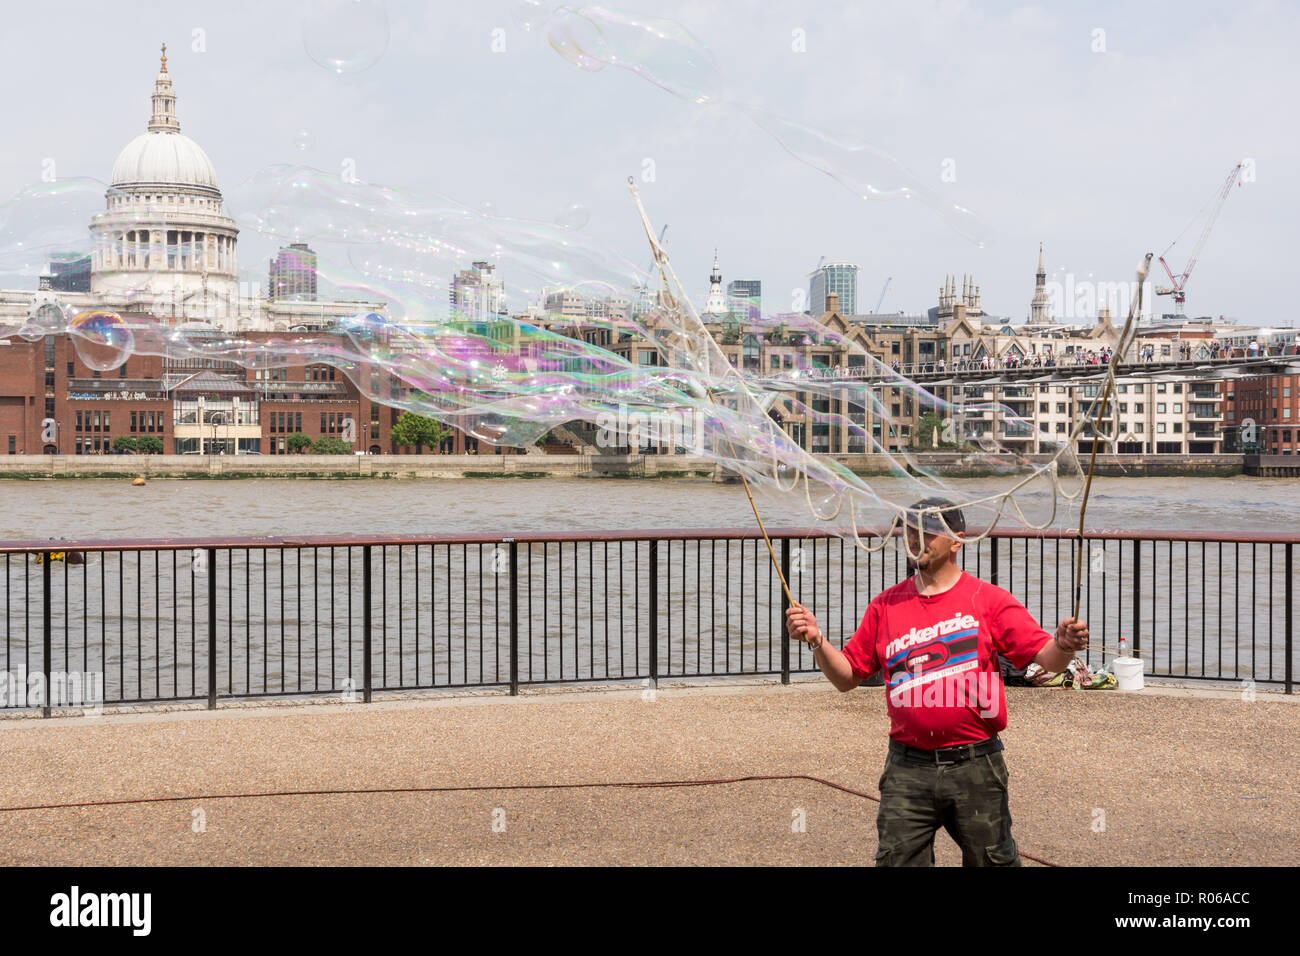 LONDON, Regno Unito - Giugno 2016 - artista di strada peforming il suo spettacolo sul lungomare a Londra. Dietro il fiume, la cattedrale di Saint Paul è visibile Foto Stock